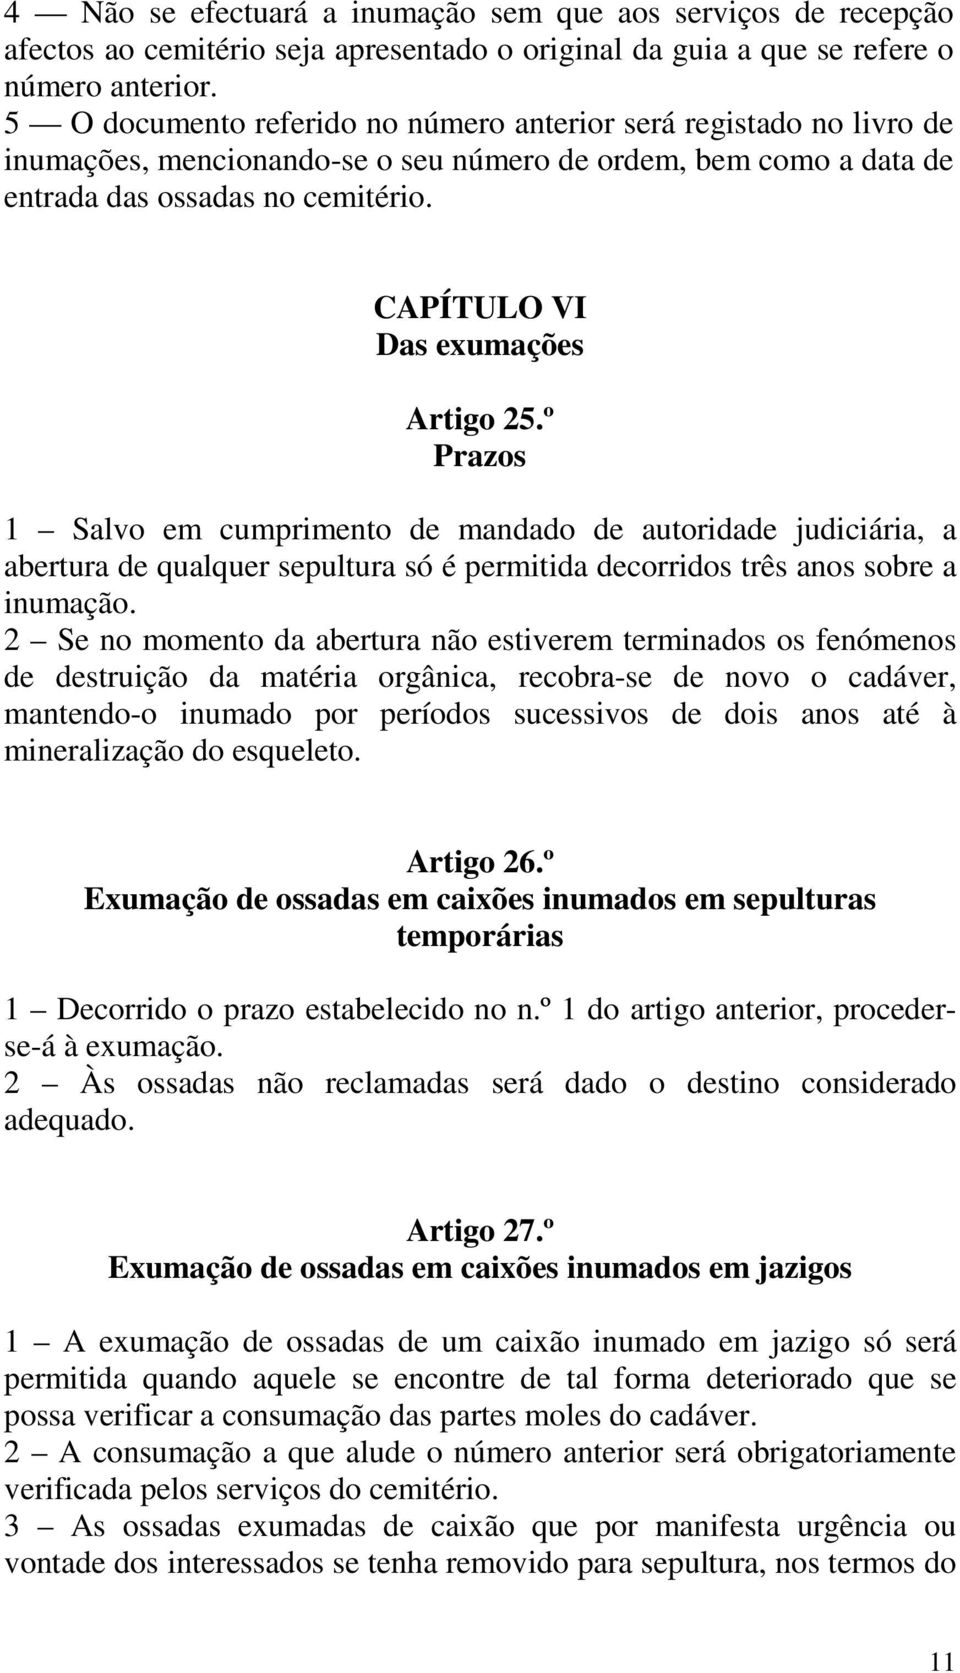 CAPÍTULO VI Das exumações Artigo 25.º Prazos 1 Salvo em cumprimento de mandado de autoridade judiciária, a abertura de qualquer sepultura só é permitida decorridos três anos sobre a inumação.